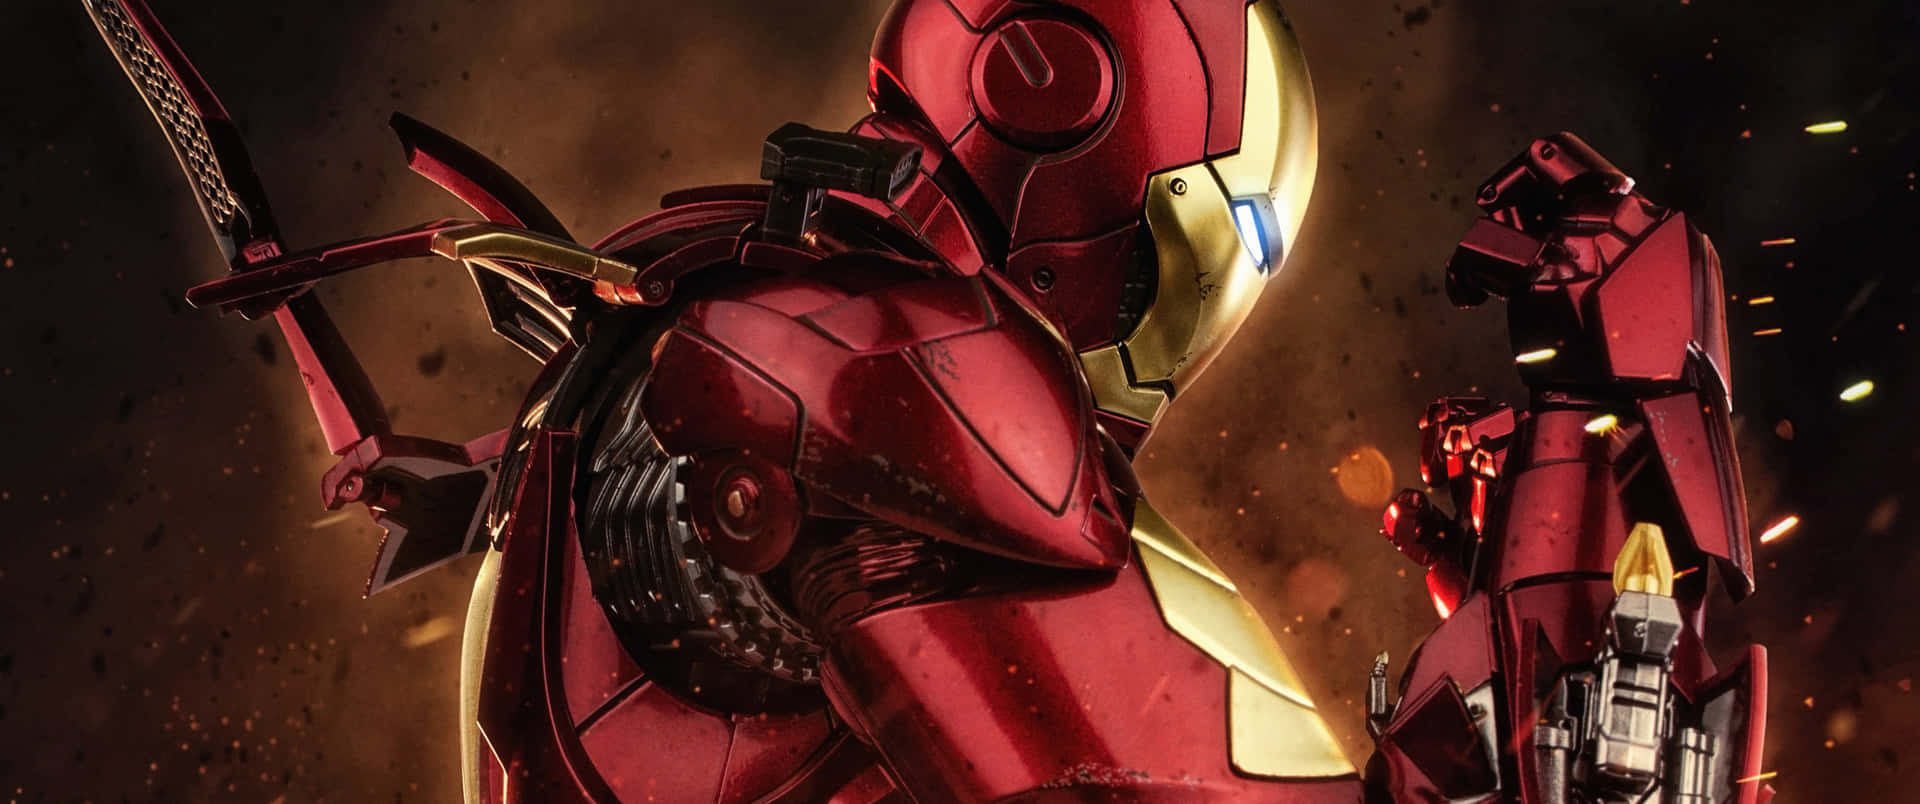 3440x1440p Iron Man Hintergrund